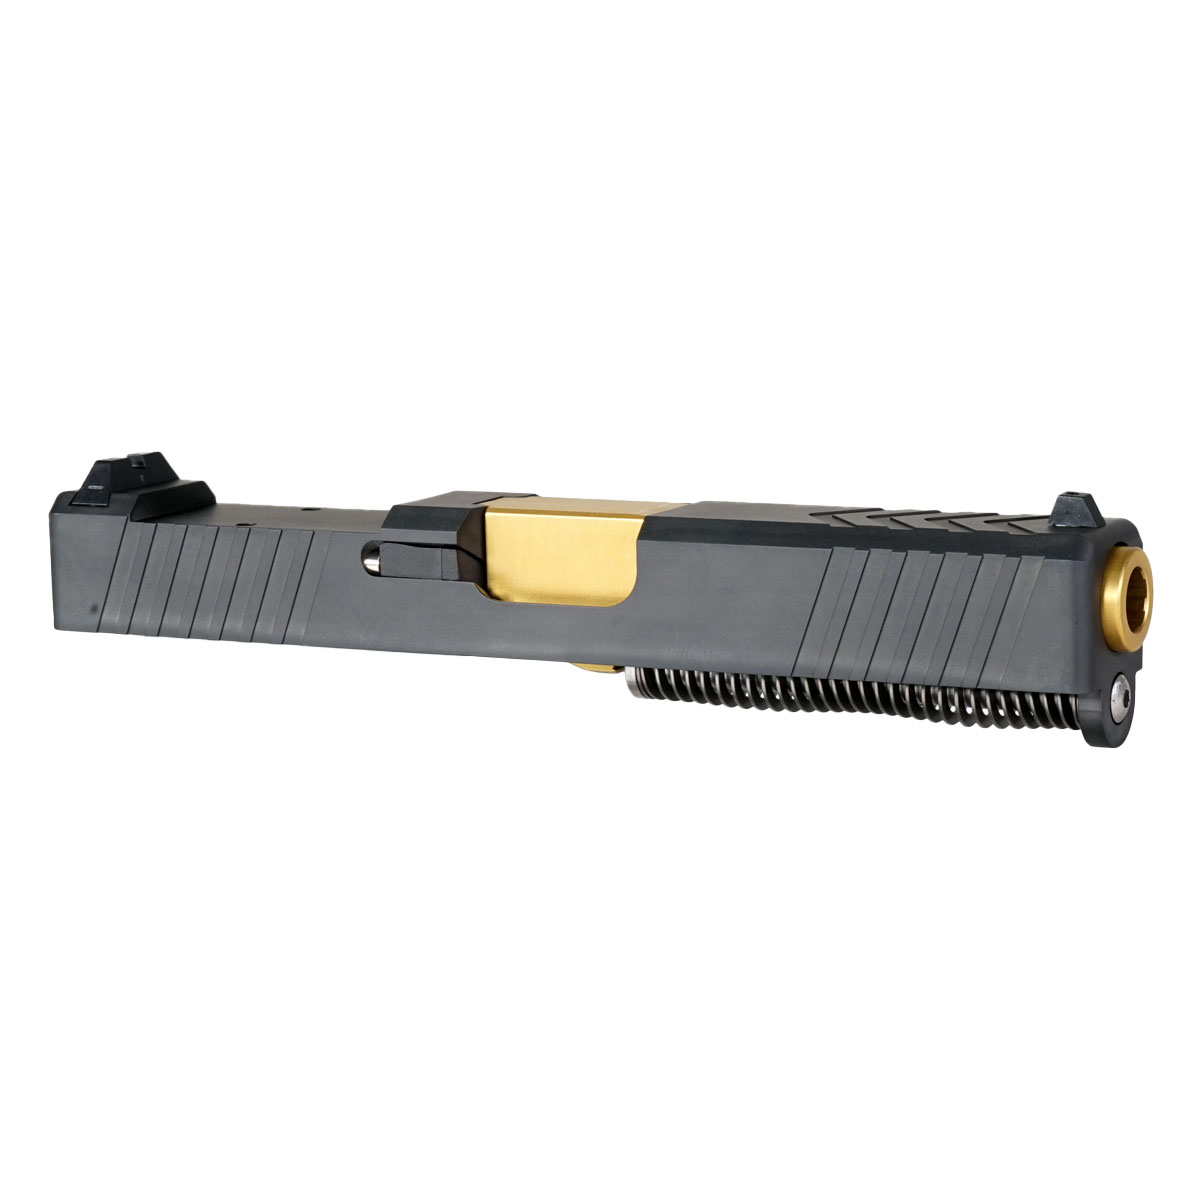 OTD 'Swindler's Chest' 9mm Complete Slide Kit - Glock 19 Gen 1-3 Compatible